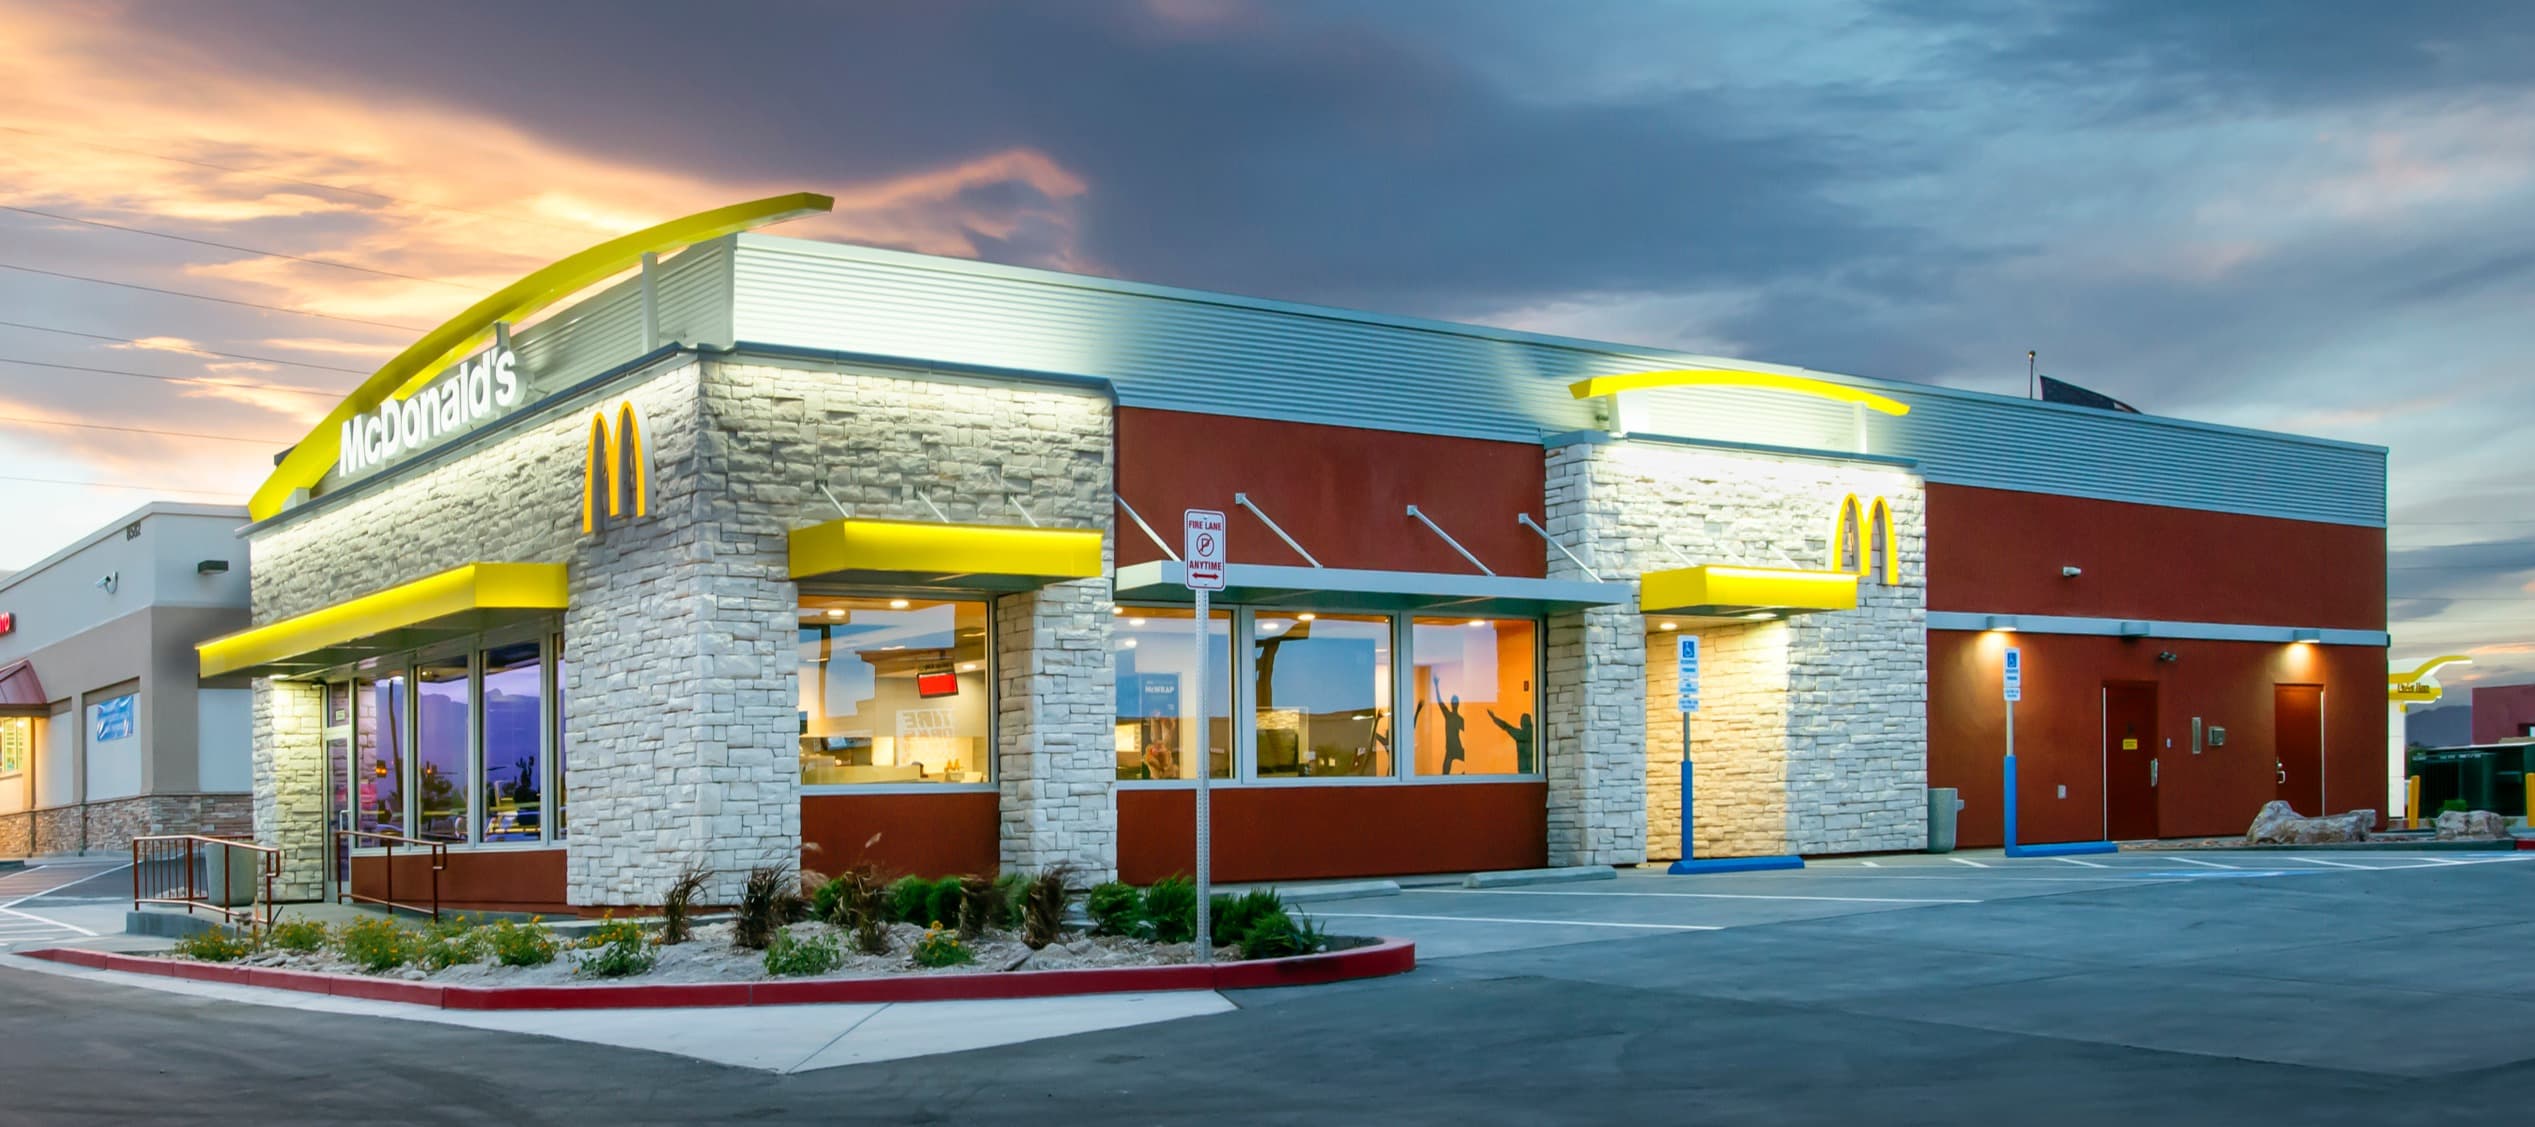 Фото новости: "Burger King и Domino’s Pizza в США сокращают скидки и порции"